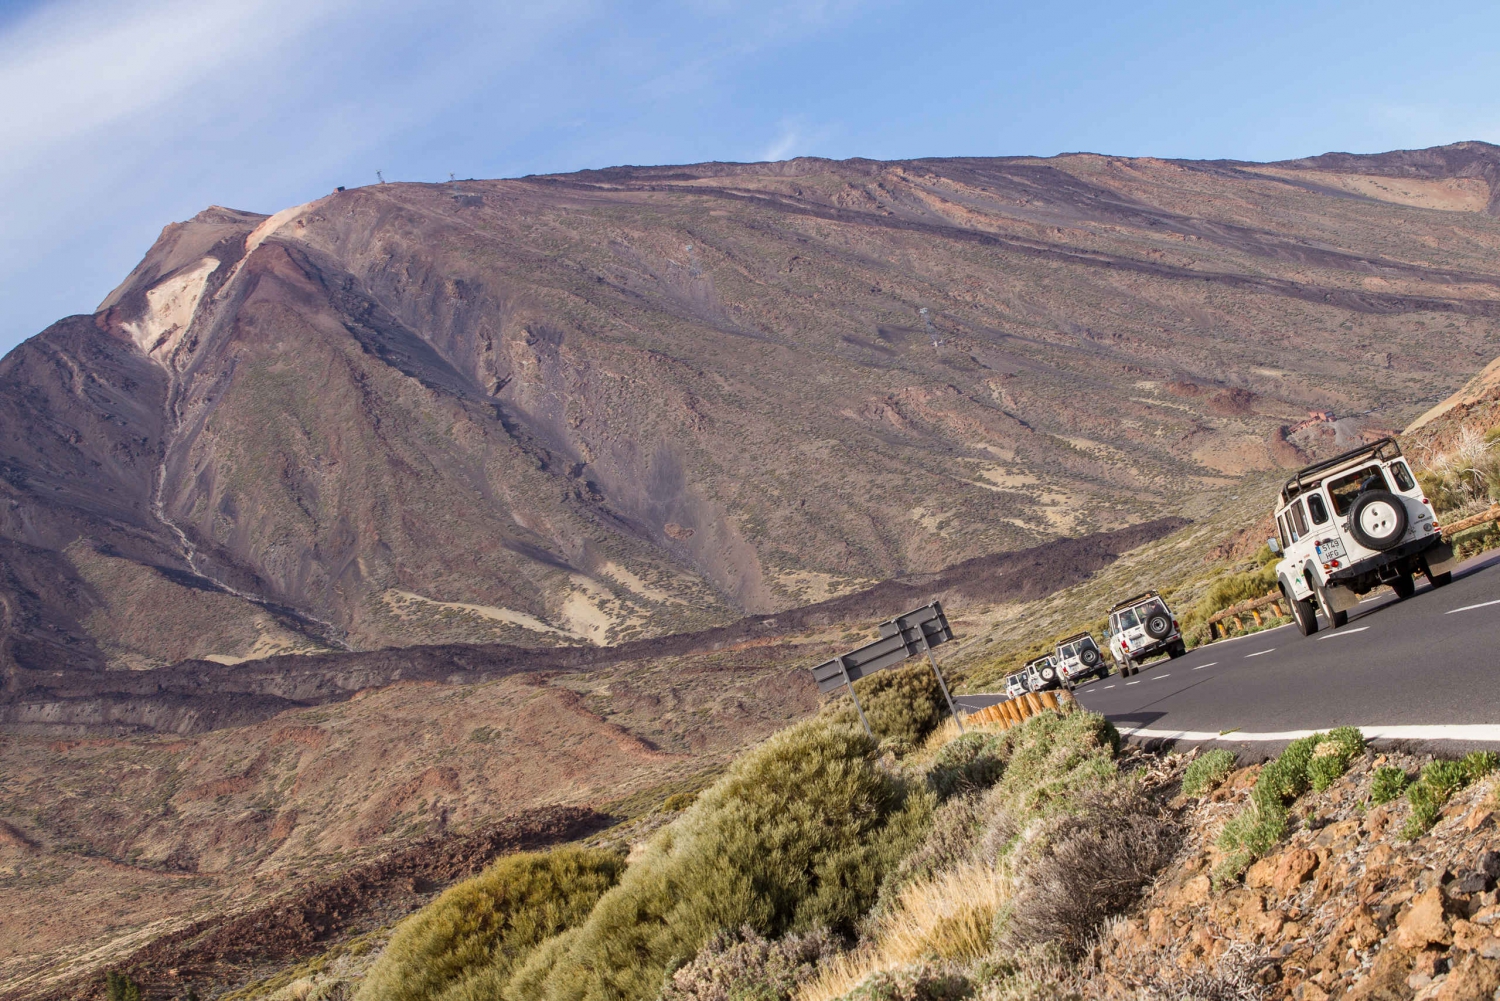 Full-Day Teide and Masca Jeep Safari